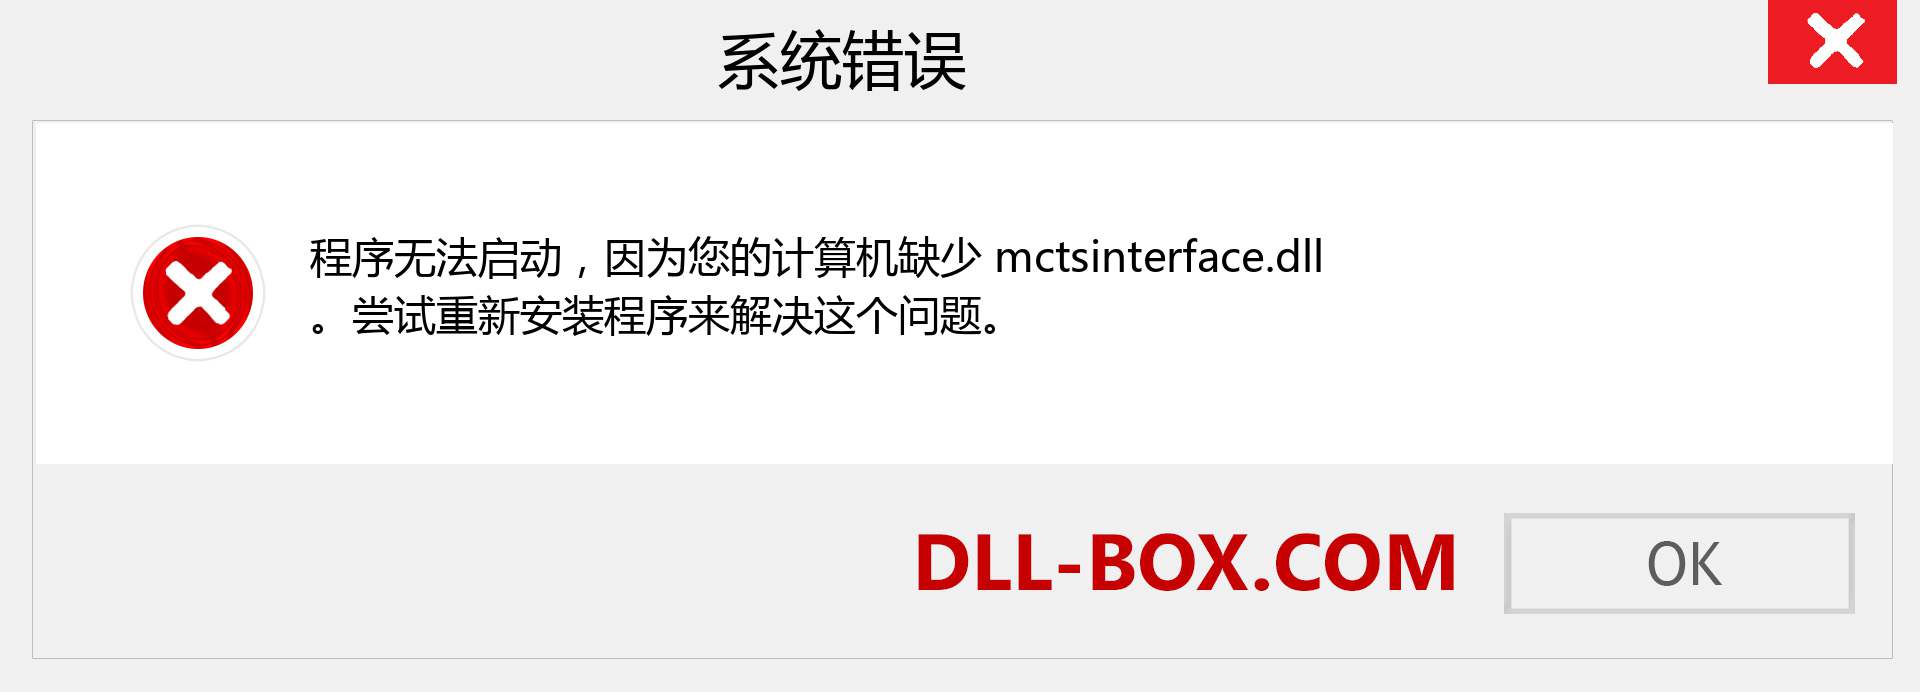 mctsinterface.dll 文件丢失？。 适用于 Windows 7、8、10 的下载 - 修复 Windows、照片、图像上的 mctsinterface dll 丢失错误